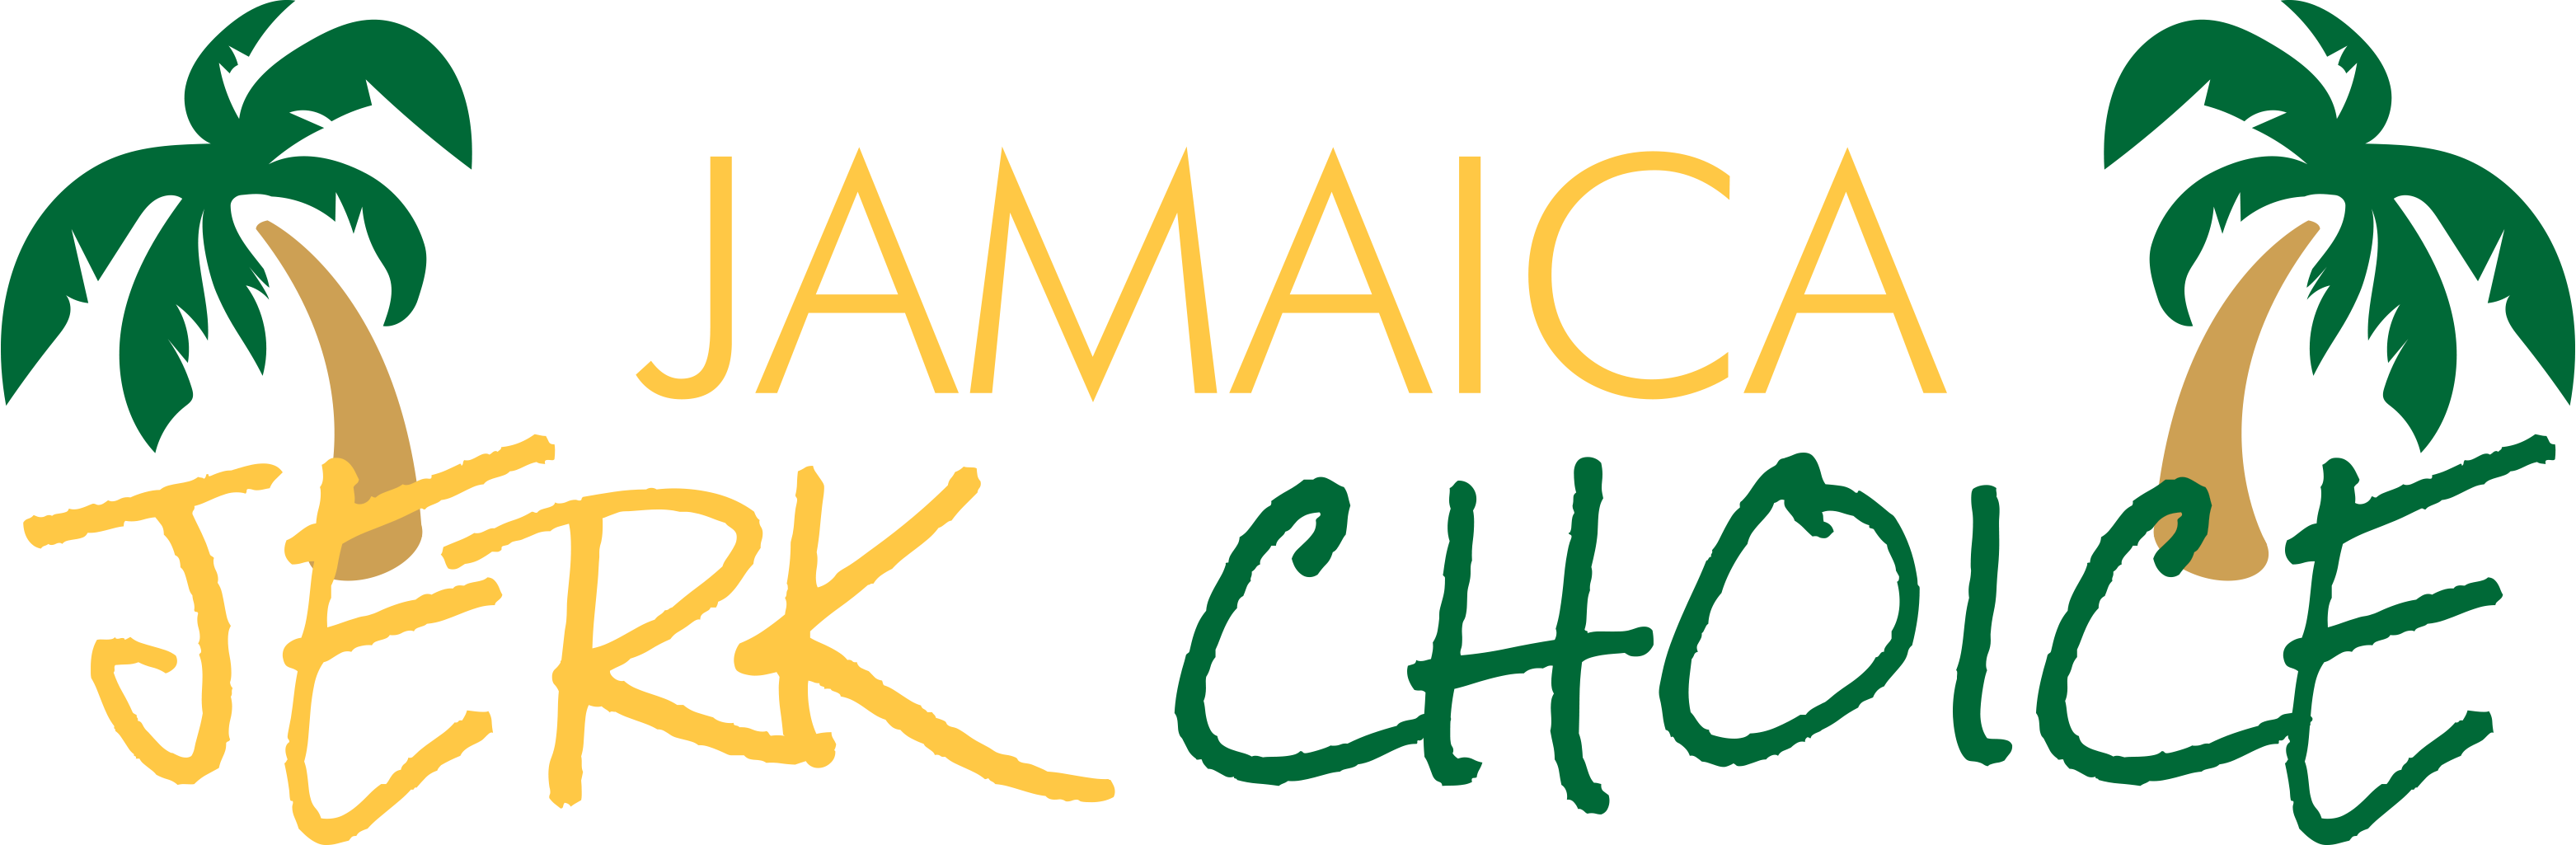 JAMAICA JERK CHOICE INC Home